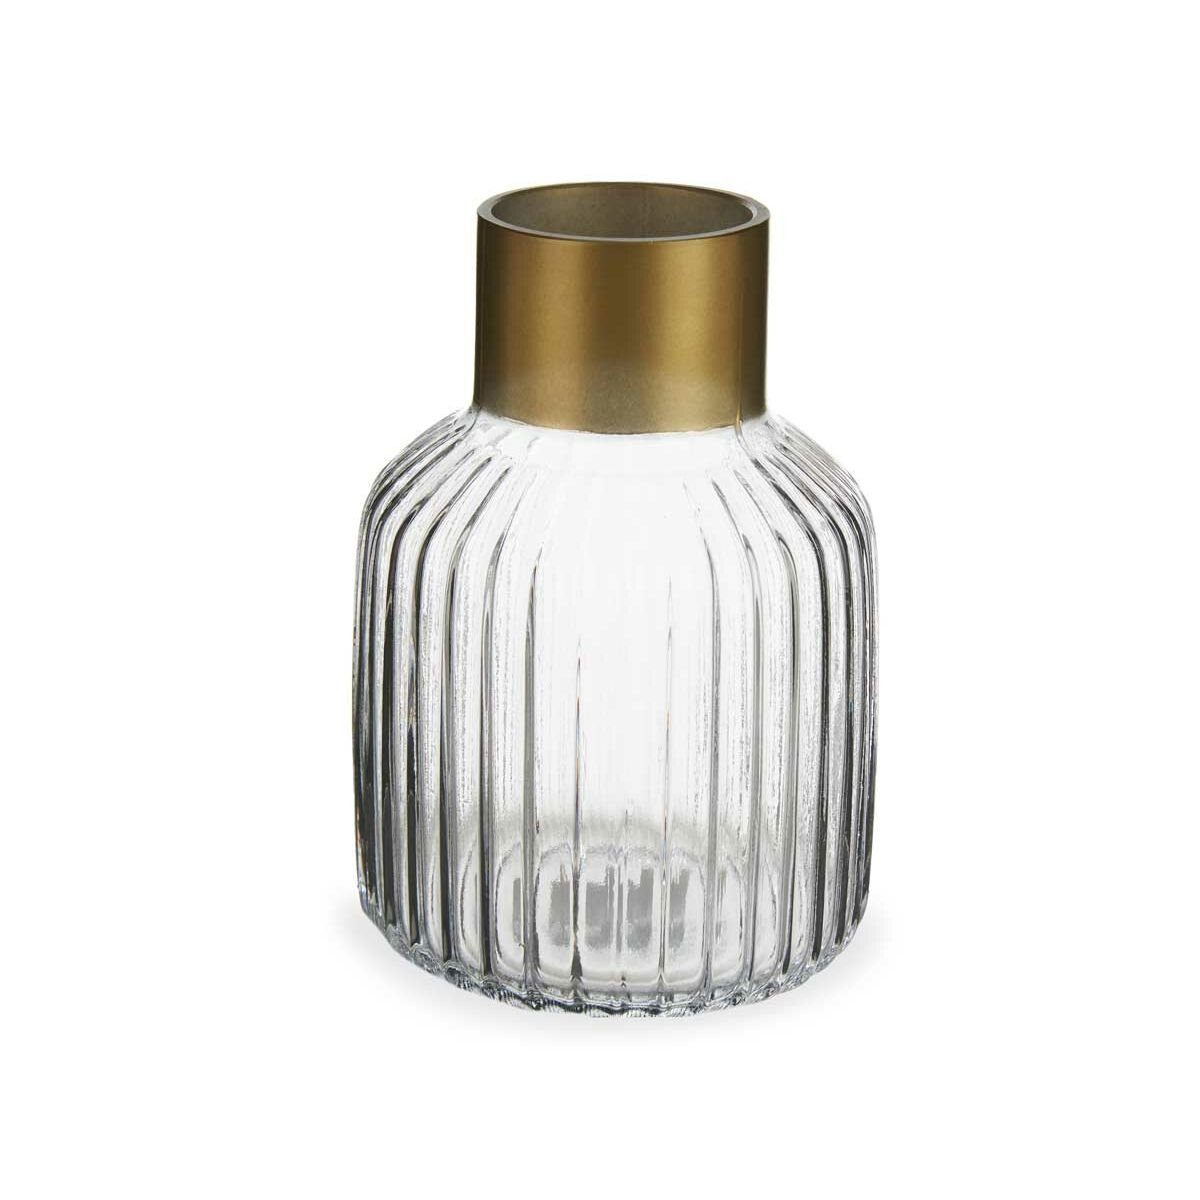 Gift Decor Dekovase Gold 12 Glas Durchsichtig x 6 x cm 18 Stück 12 Streifen Vase